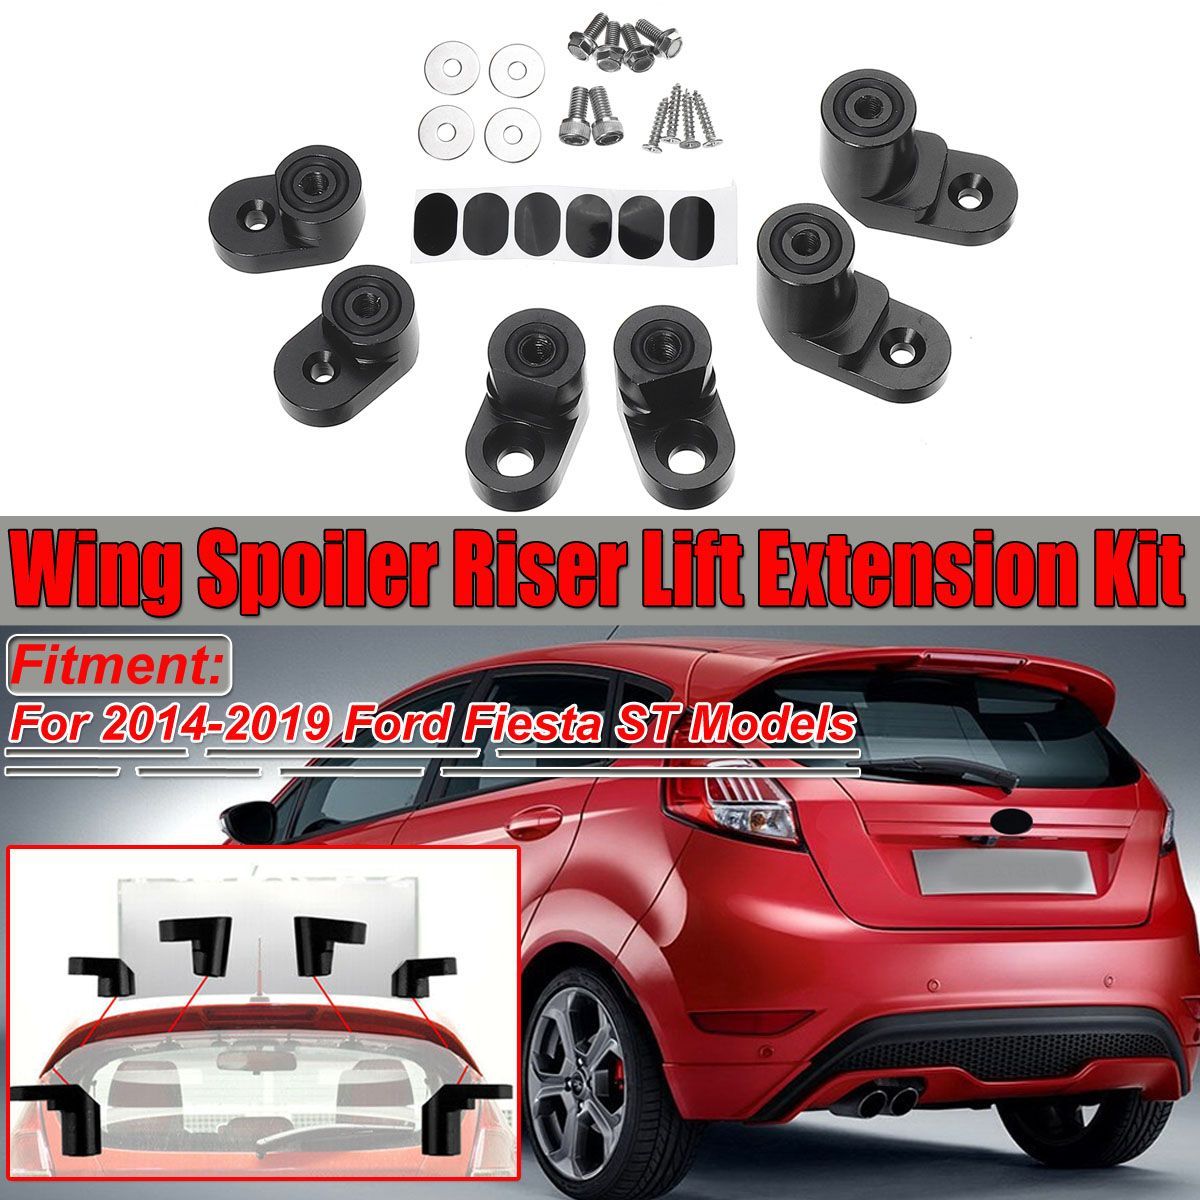 Black-Car-Rear-Spoiler-Wing-Riser-Lift-Extension-Kit-For-Ford-Fiesta-ST-Hatchback-2014-2019-1582060